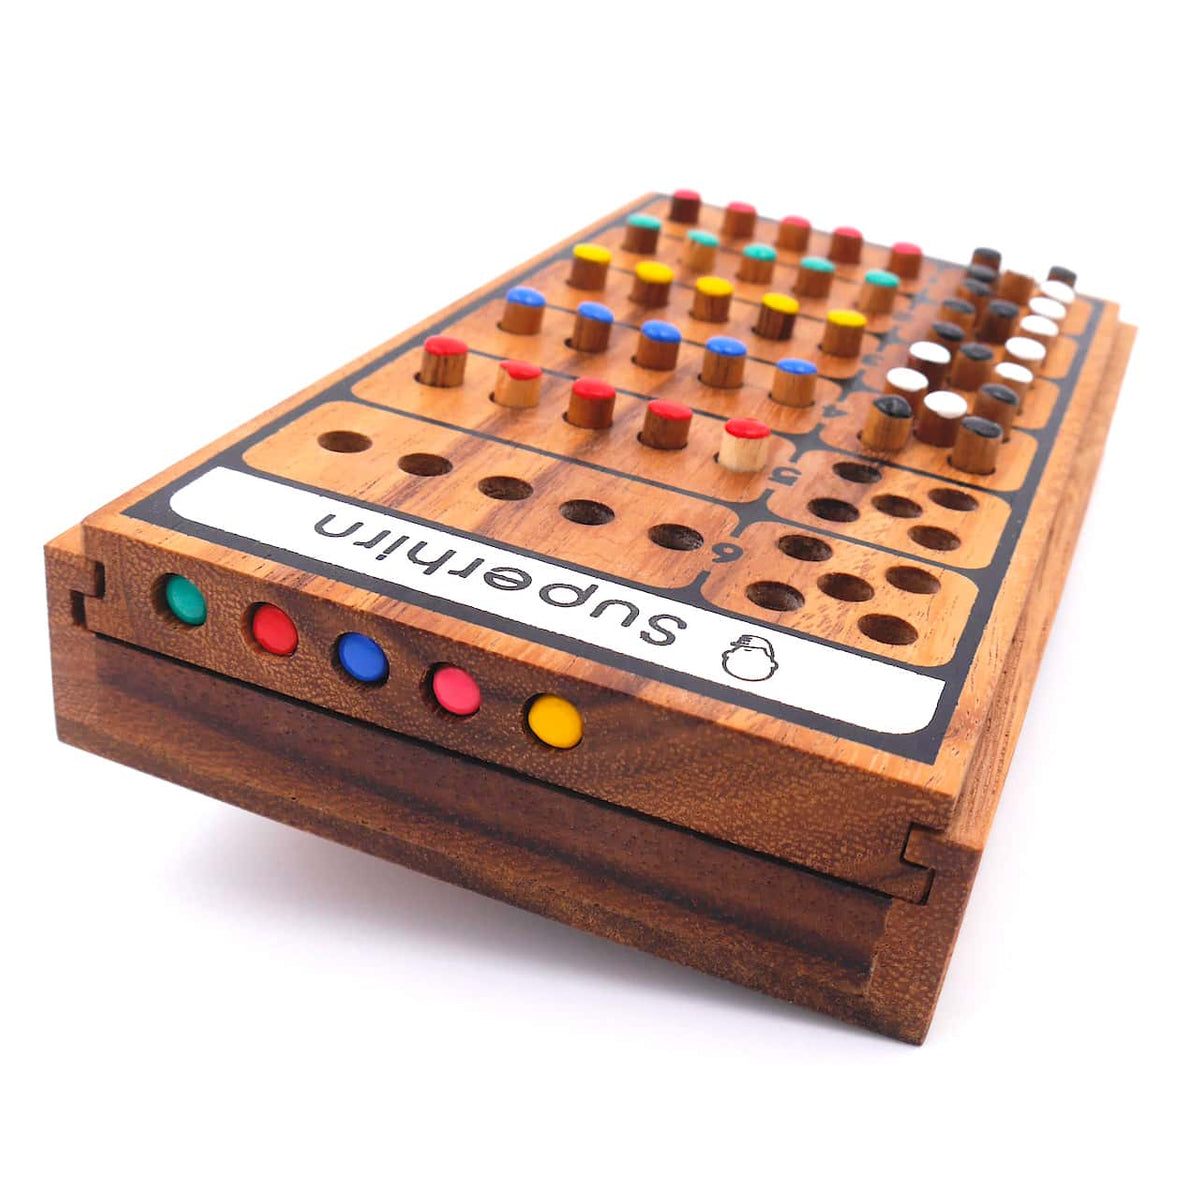 Superhirn - Color Finder - 5 Farben, mehr Spielspaß, 2 Personen, Holzspiel inkl. praktischem Verschlussband